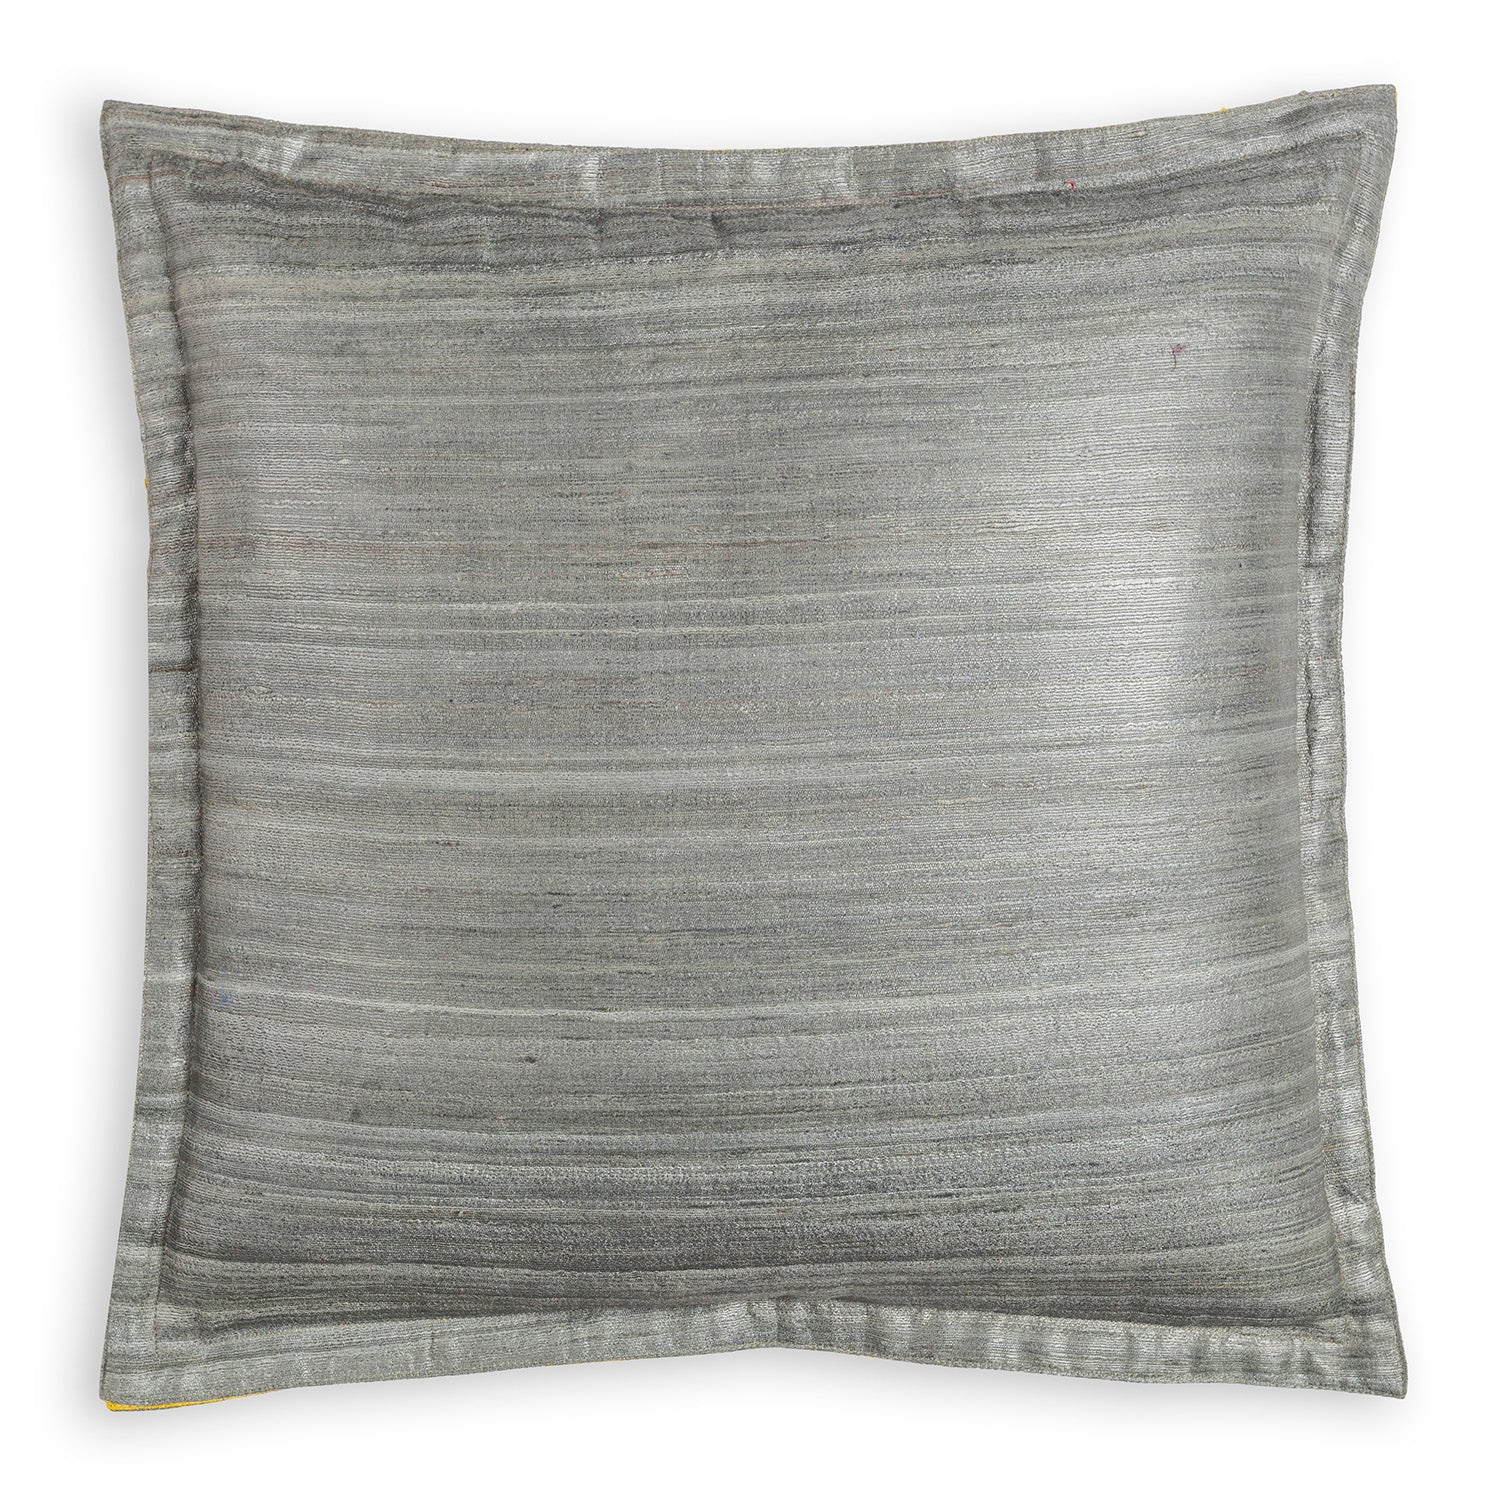 Handloom Tussar Silk Cushion Cover - 16x16